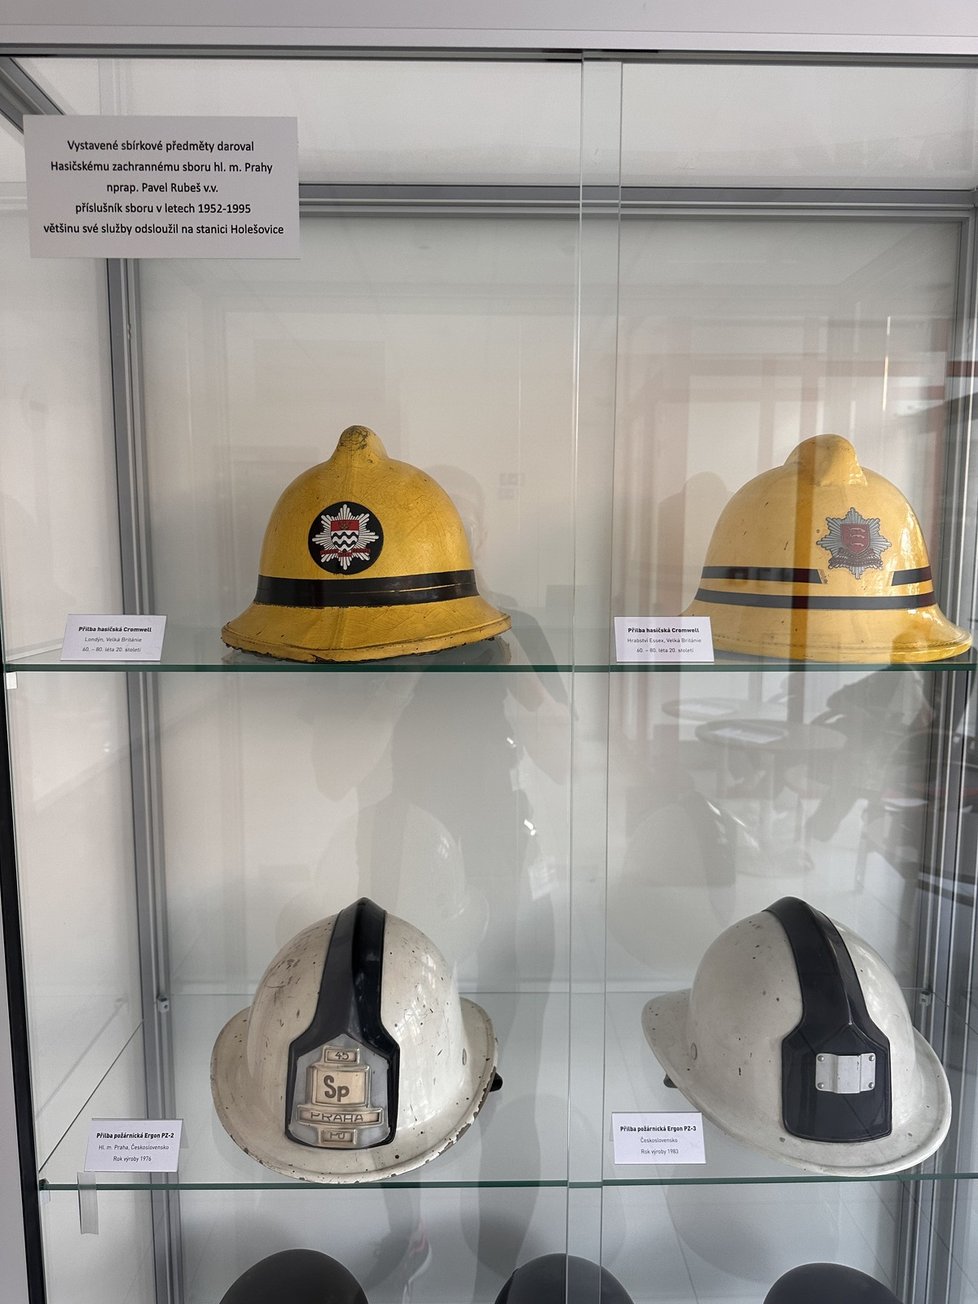 Když se bourala provizorní hasičská stnaice v Holešovicích, byl to právě pan Rubeš, kdo svou vášní pro sběratelství uchránil řadu historických artefaktů. Ty jsou na nové holešovické stanici dodnes vidění.